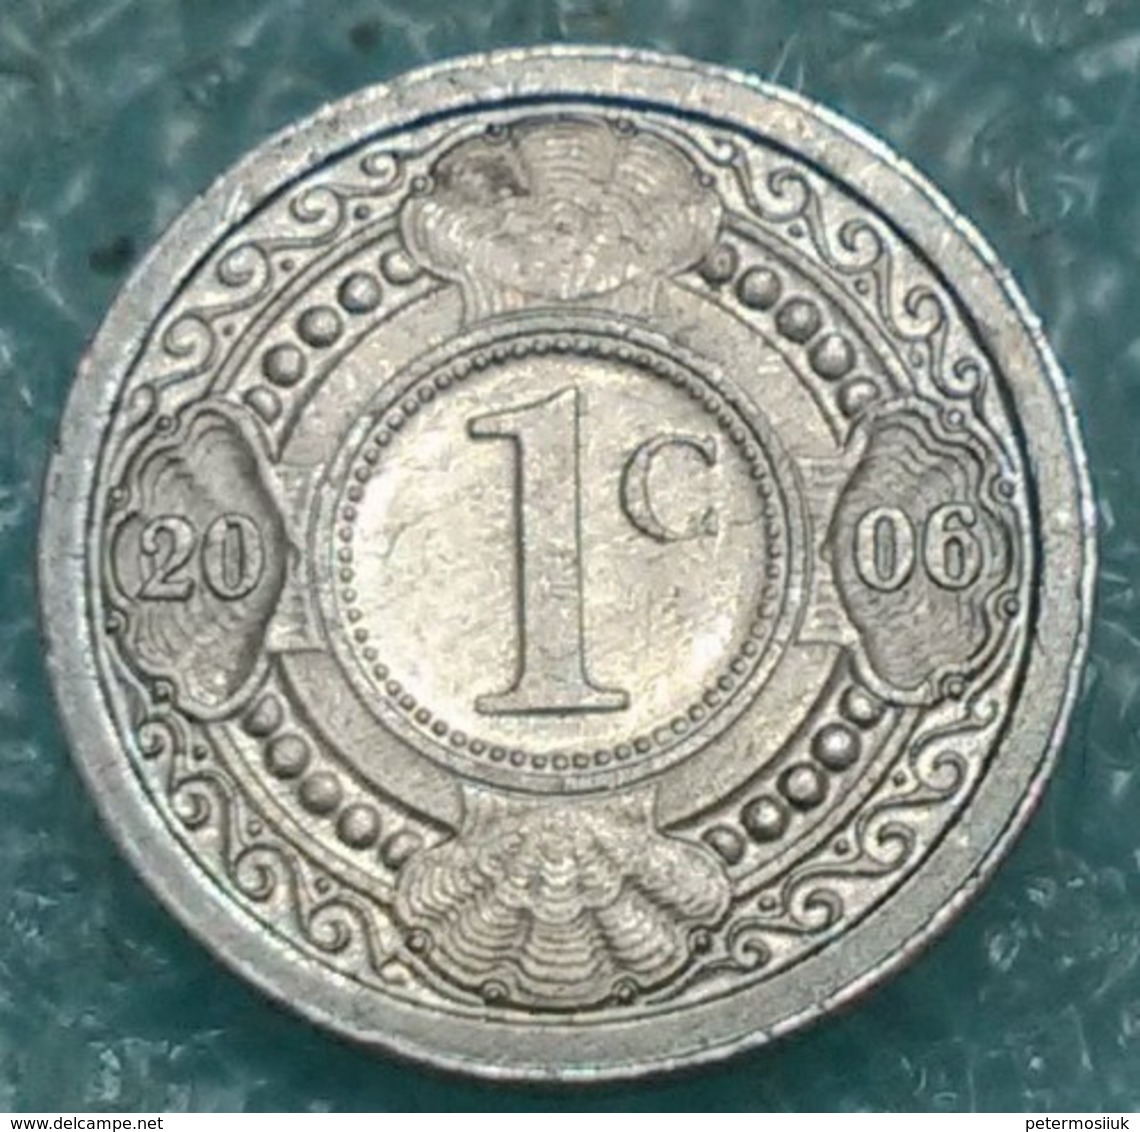 Netherlands Antilles 1 Cent, 2006 -4422 - Antille Olandesi